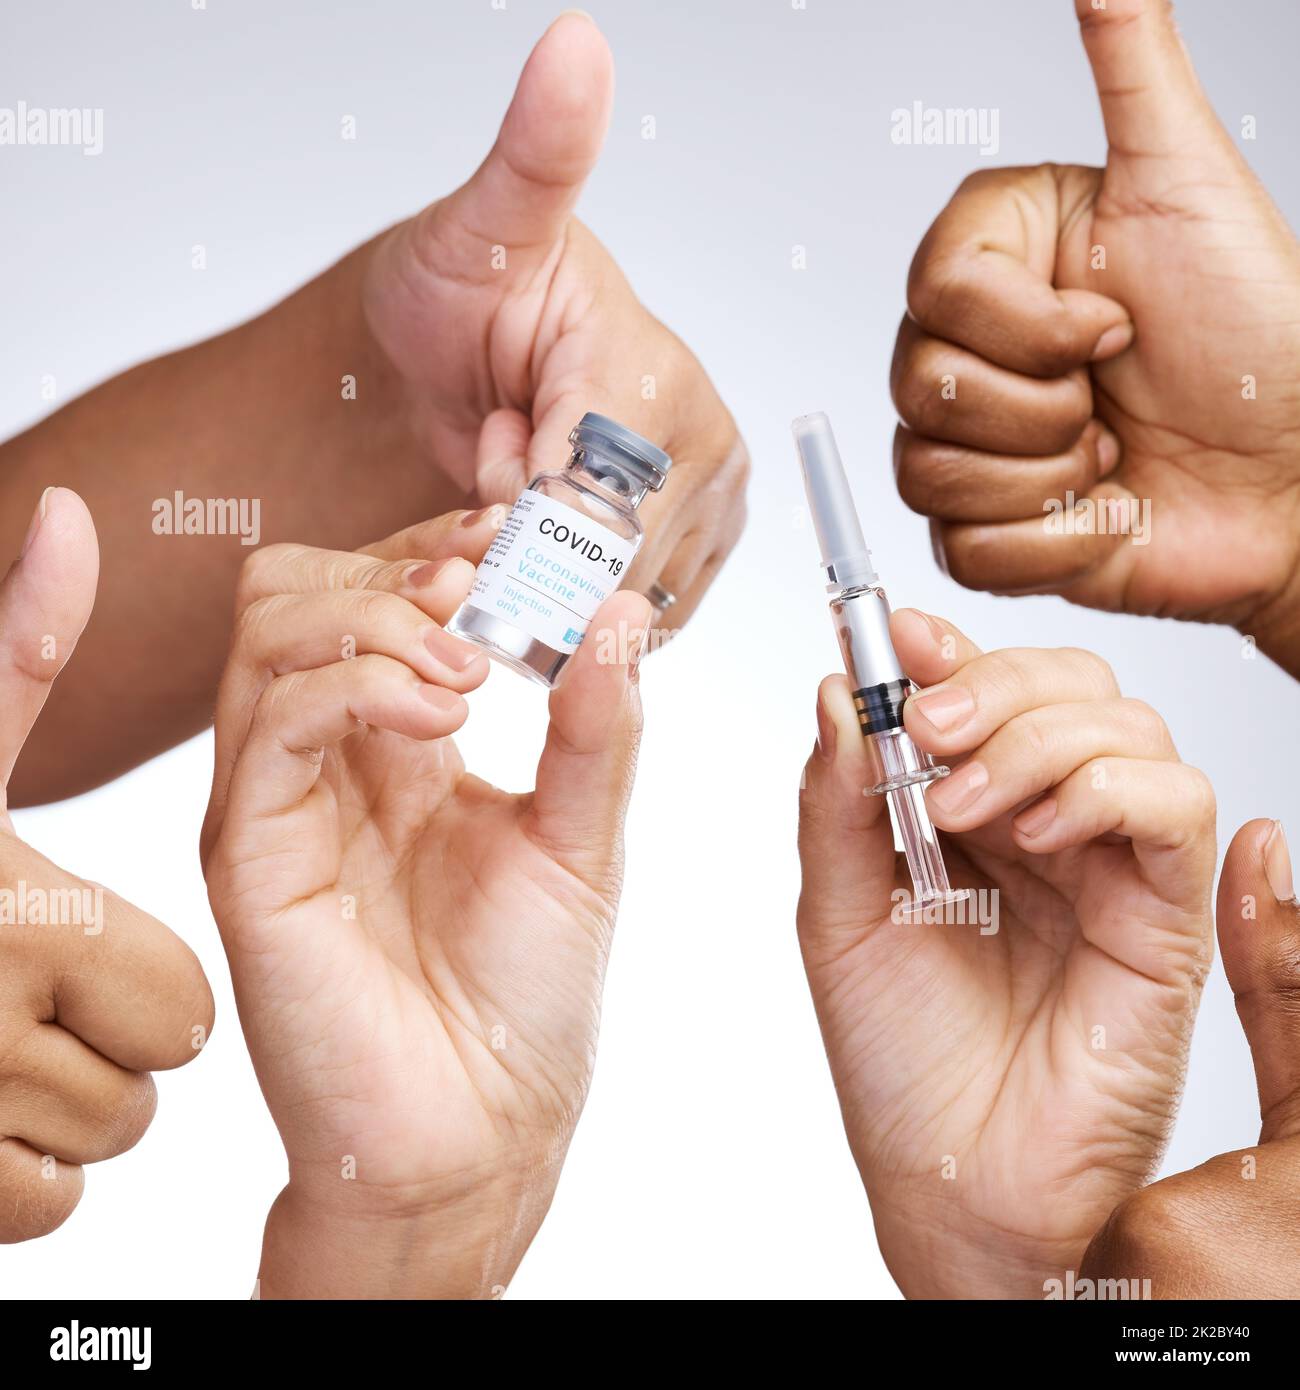 Sich selbst zu pflegen ist nicht egoistisch. Studioaufnahme einer Gruppe von Menschen, die Daumen nach oben zeigen und den Impfstoff vor grauem Hintergrund halten. Stockfoto